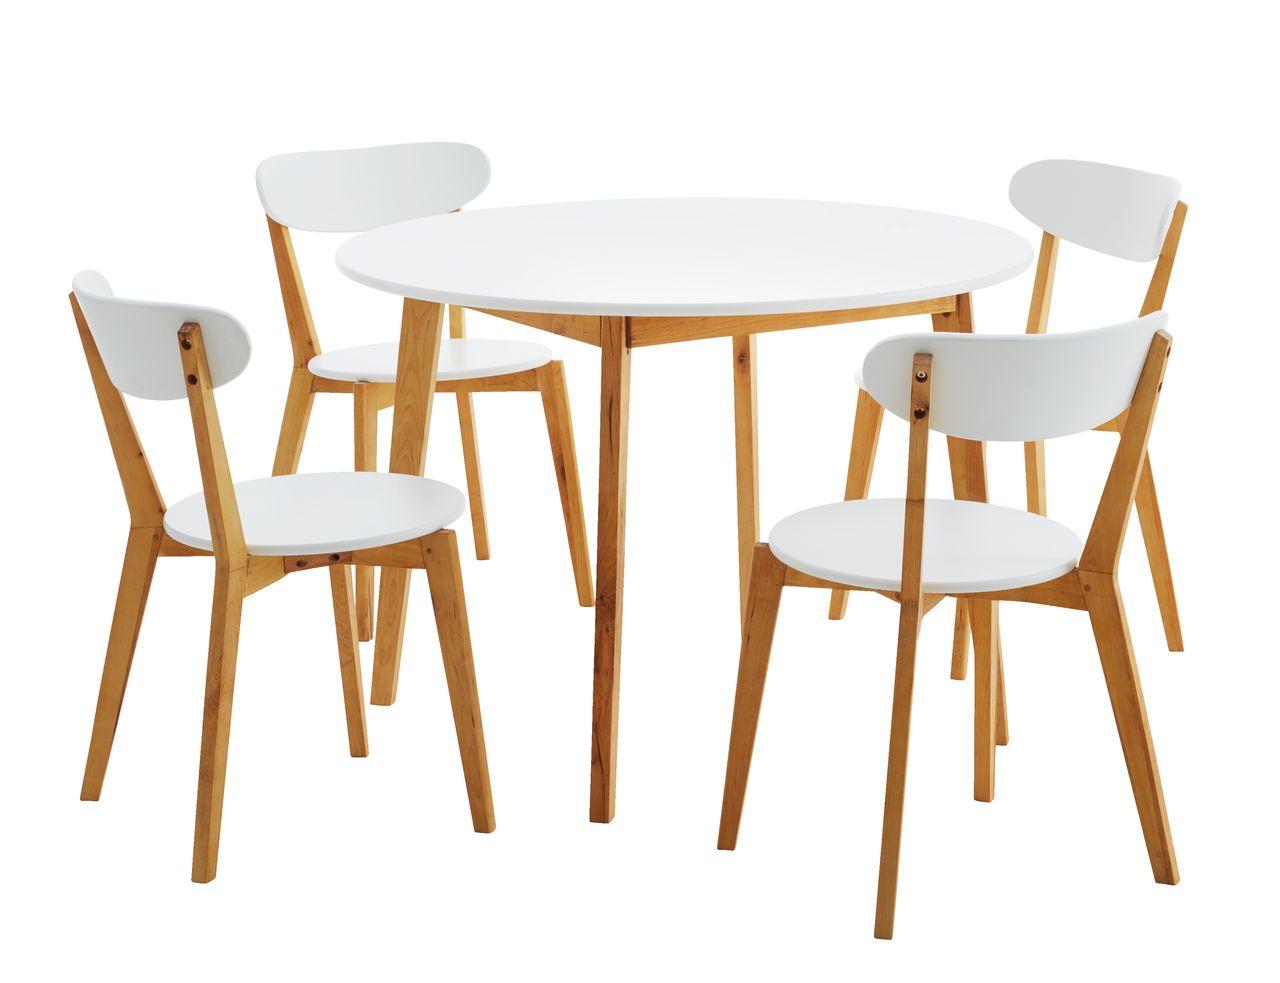 Стулья для кухни комплект 4. JYSK Jegind стул. Набор мебели (стол + 4 стула) Вайт бел.. JYSK стол обеденный. Стол JYSK круглый обеденный.